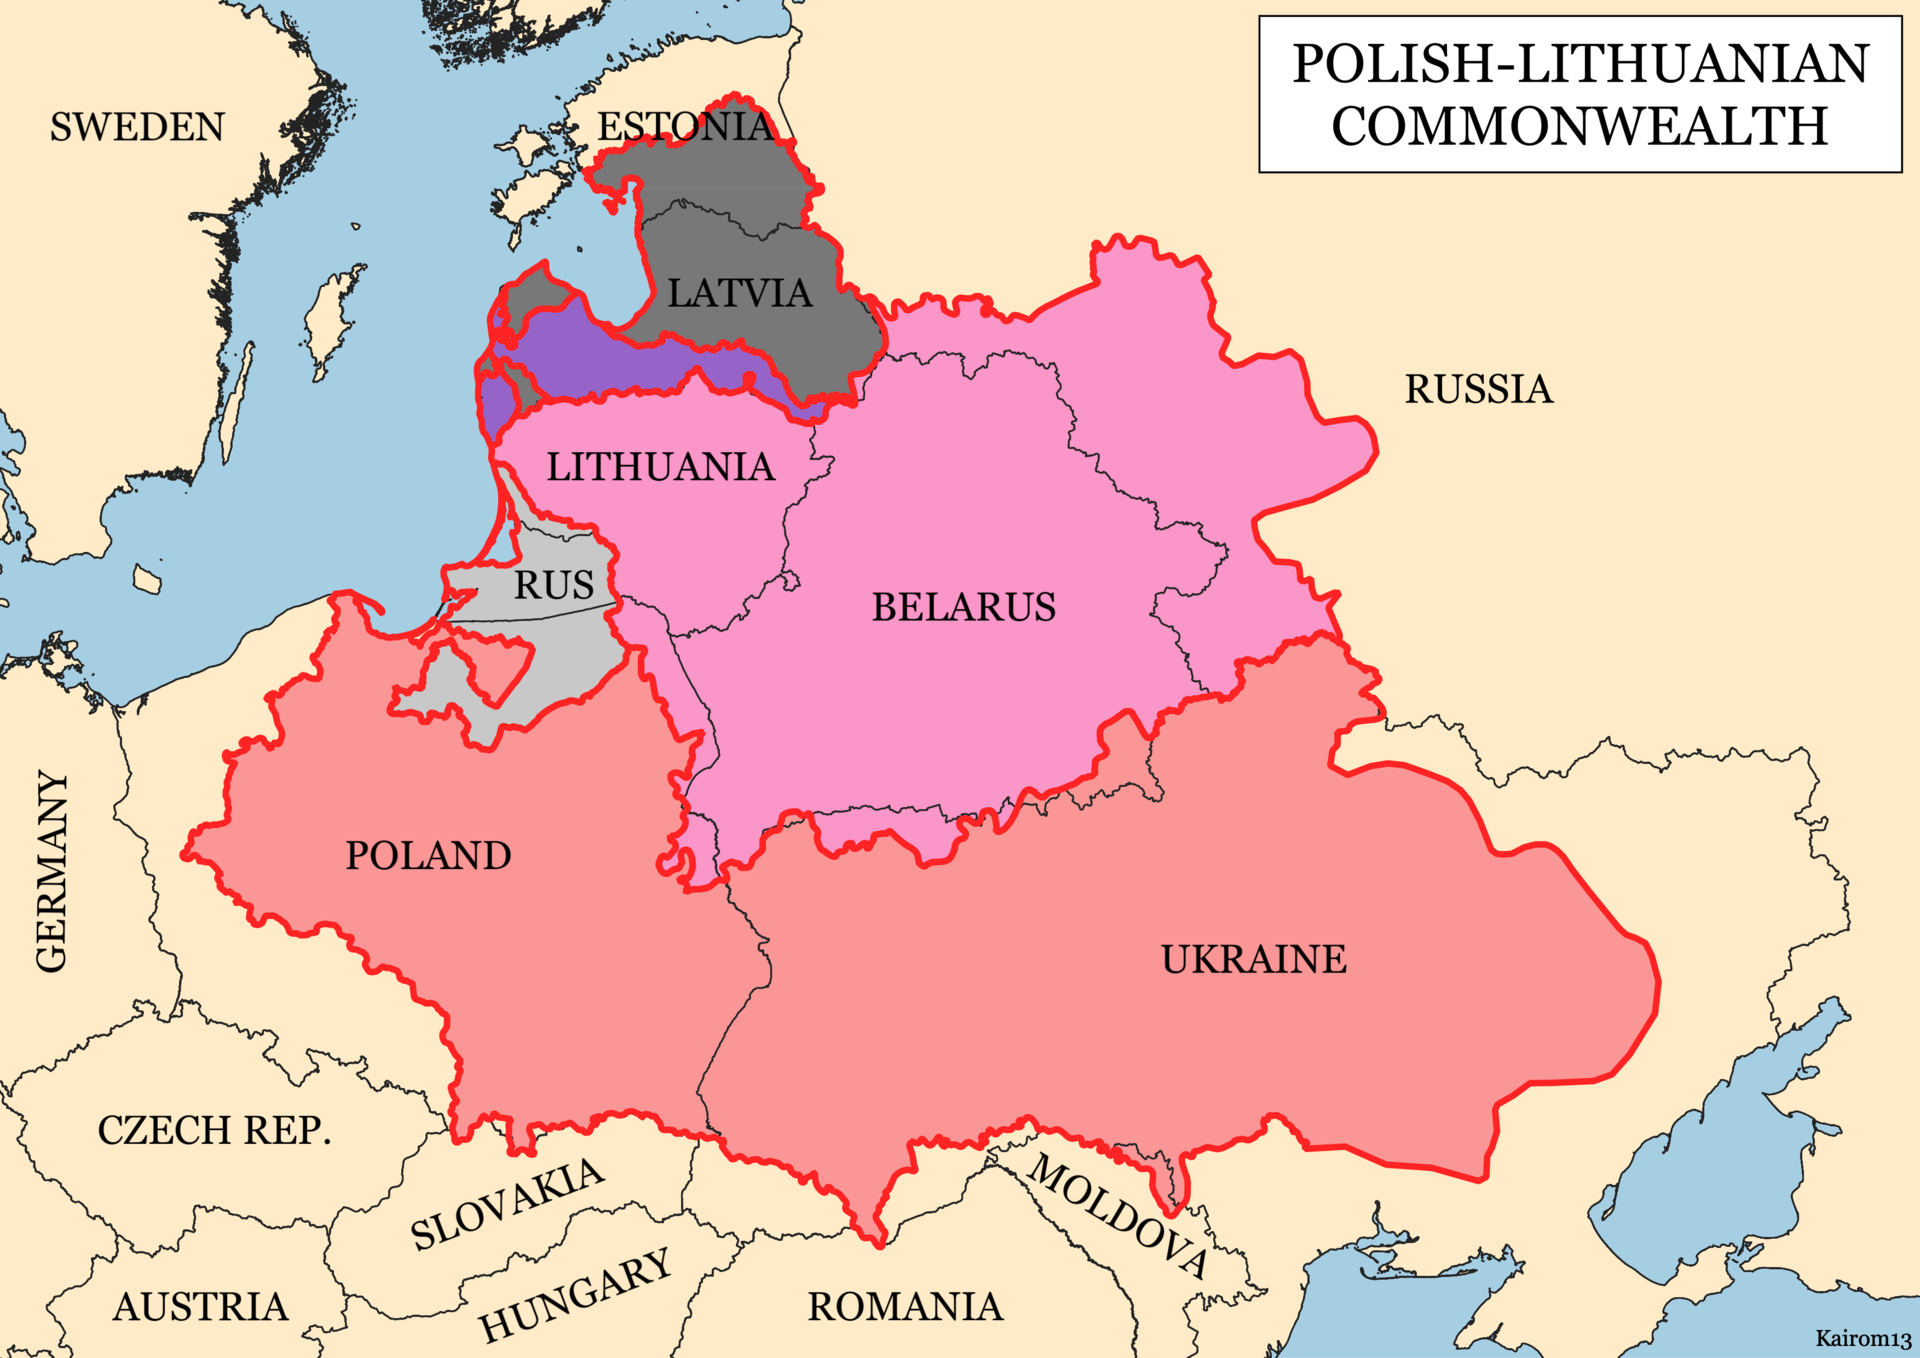 Bản đồ Khối Thịnh vượng chung Ba Lan - Lithuania vào năm 1619, vùng màu đỏ là vương quốc Ba Lan trong khối (bao gồm phần lớn&nbsp;lãnh thổ Ukraine).